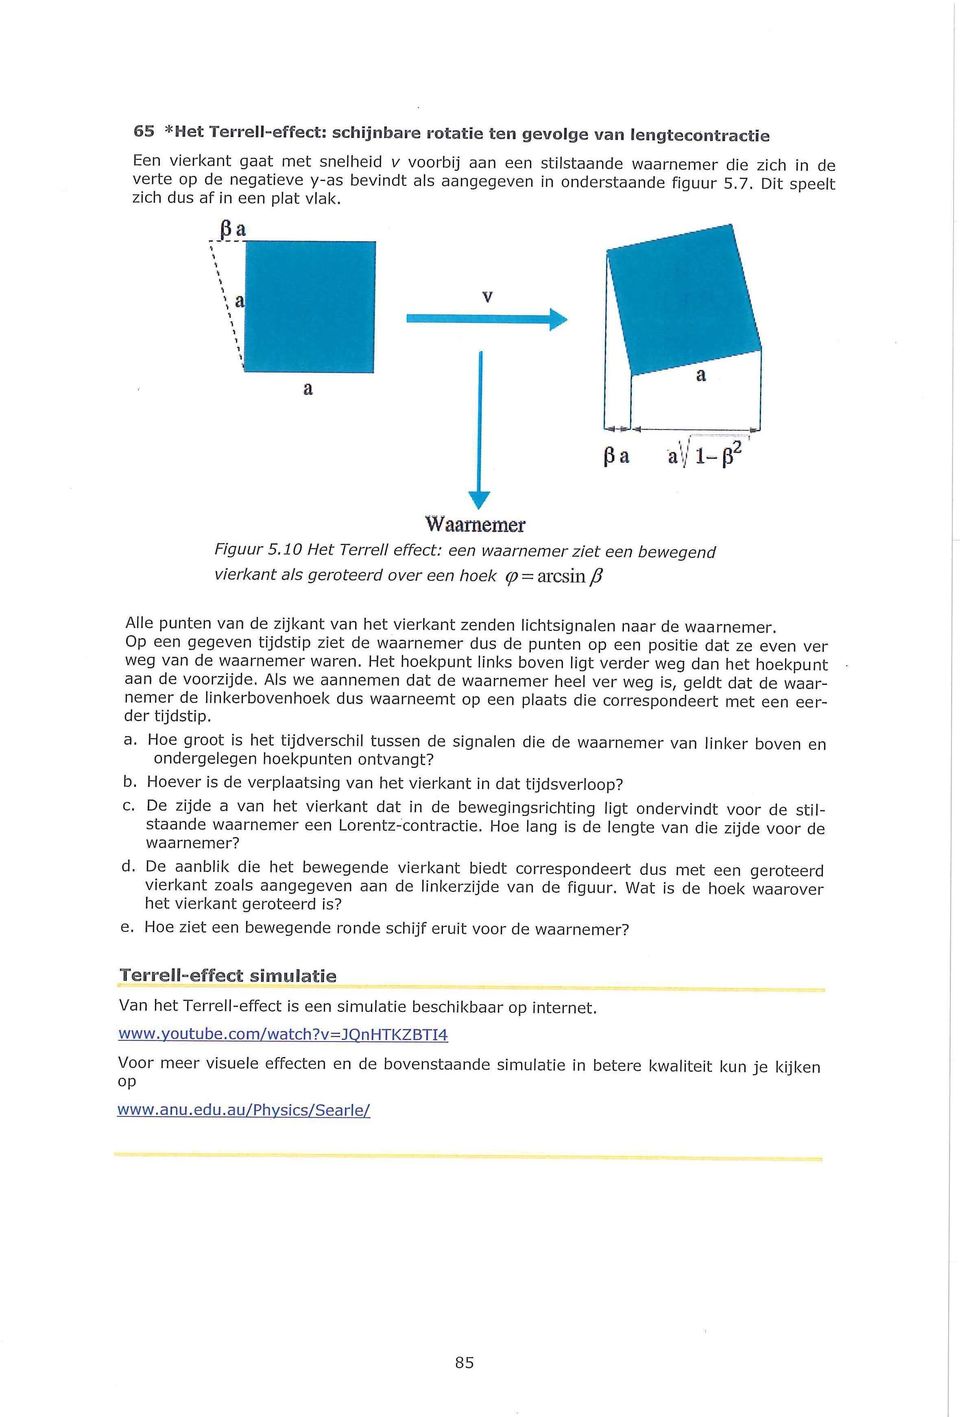 10 Het Terrell effect: een waarnemer ziet een bewegend vierkant als geroteerd over een hoek (p - arcsin /? Alle punten van de zijkant van het vierkant zenden lichtsignalen naar de waarnemer.